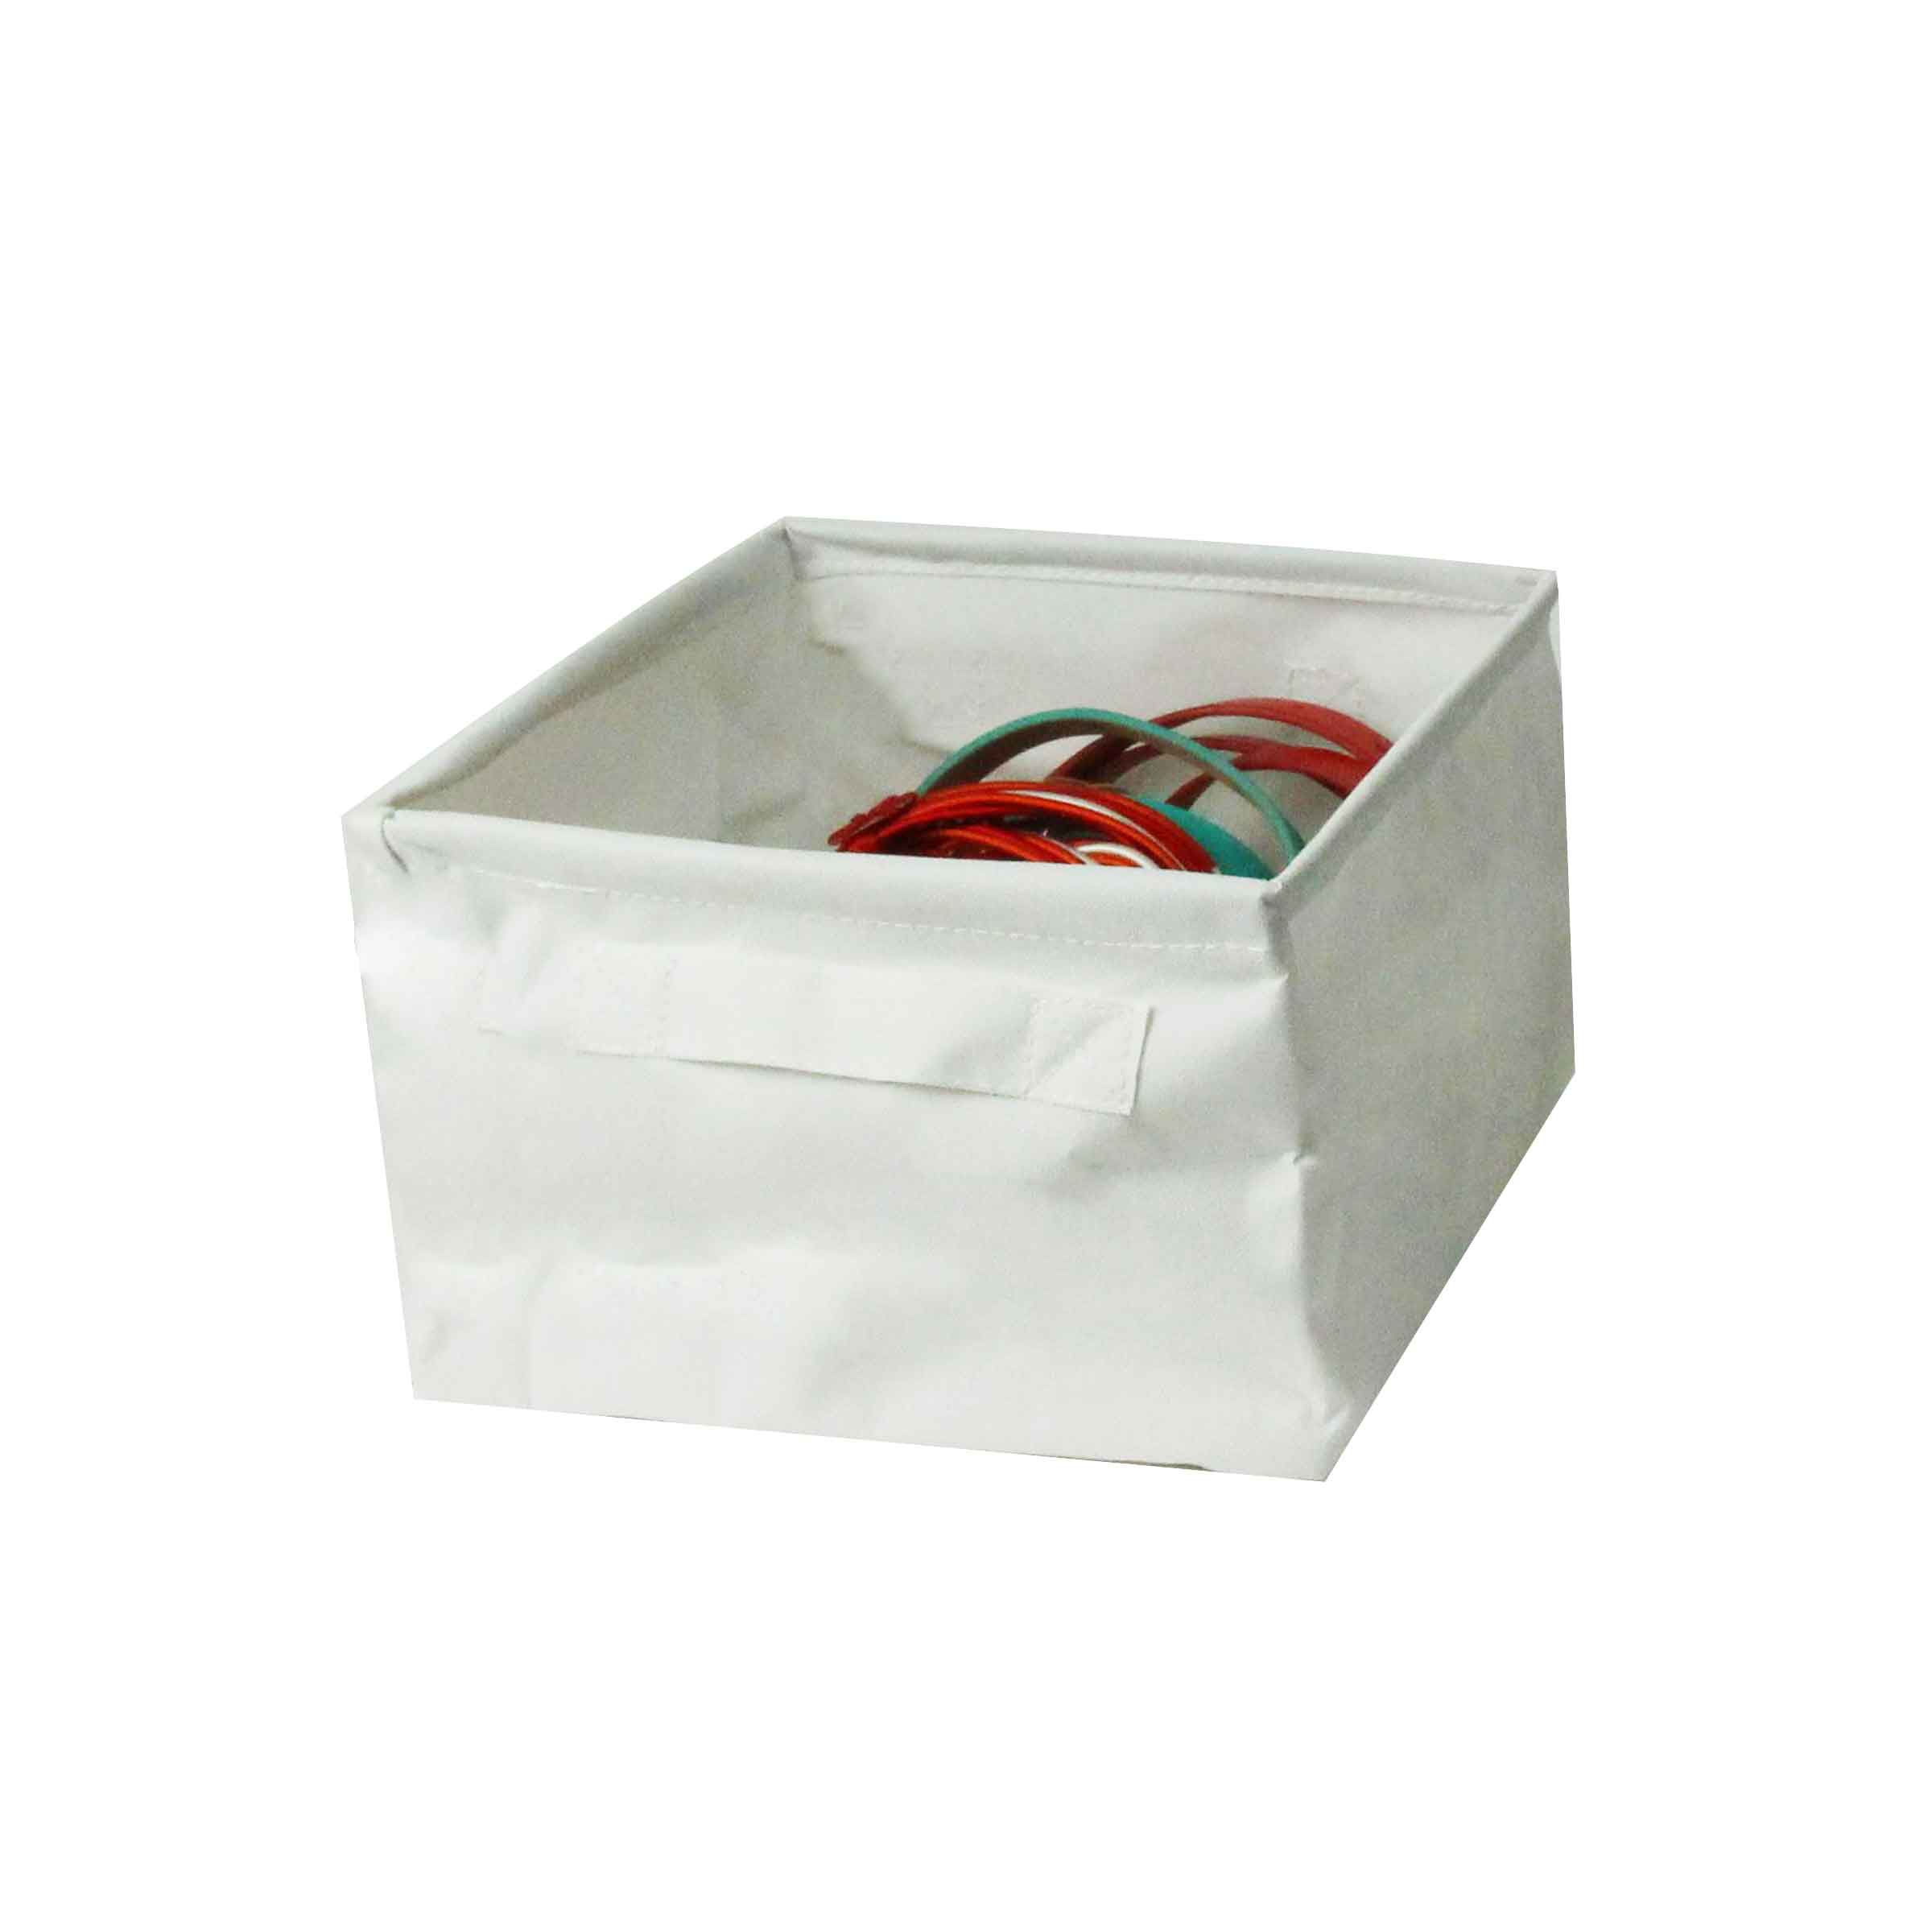 Boîte de rangement cube - tissu gris chiné - ON RANGE TOUT